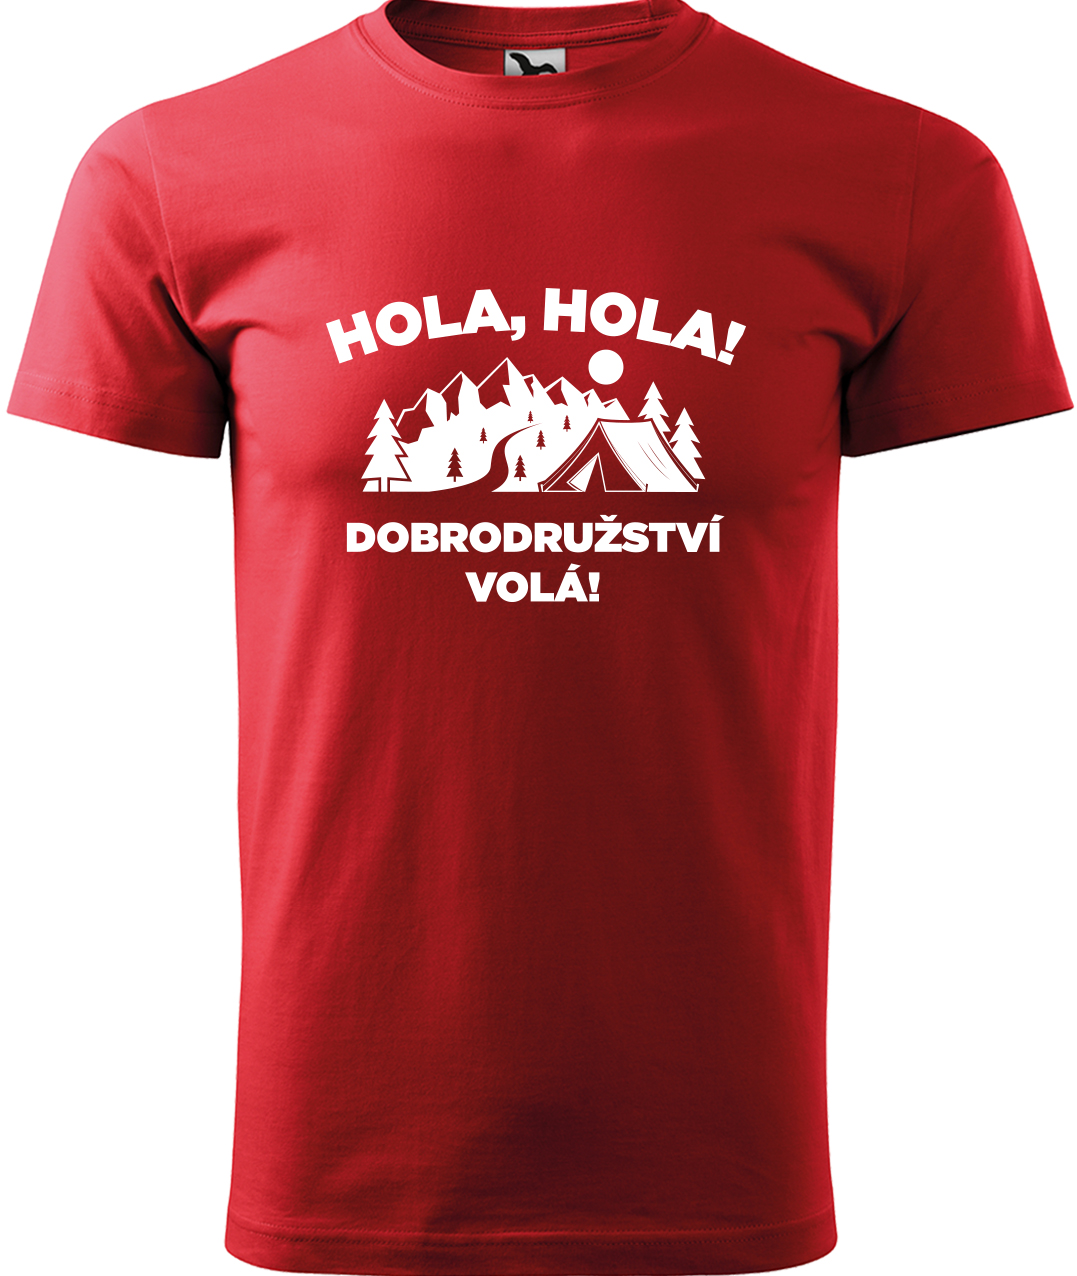 Pánské cestovatelské tričko - Hola hola! Dobrodružství volá! Velikost: S, Barva: Červená (07), Střih: pánský